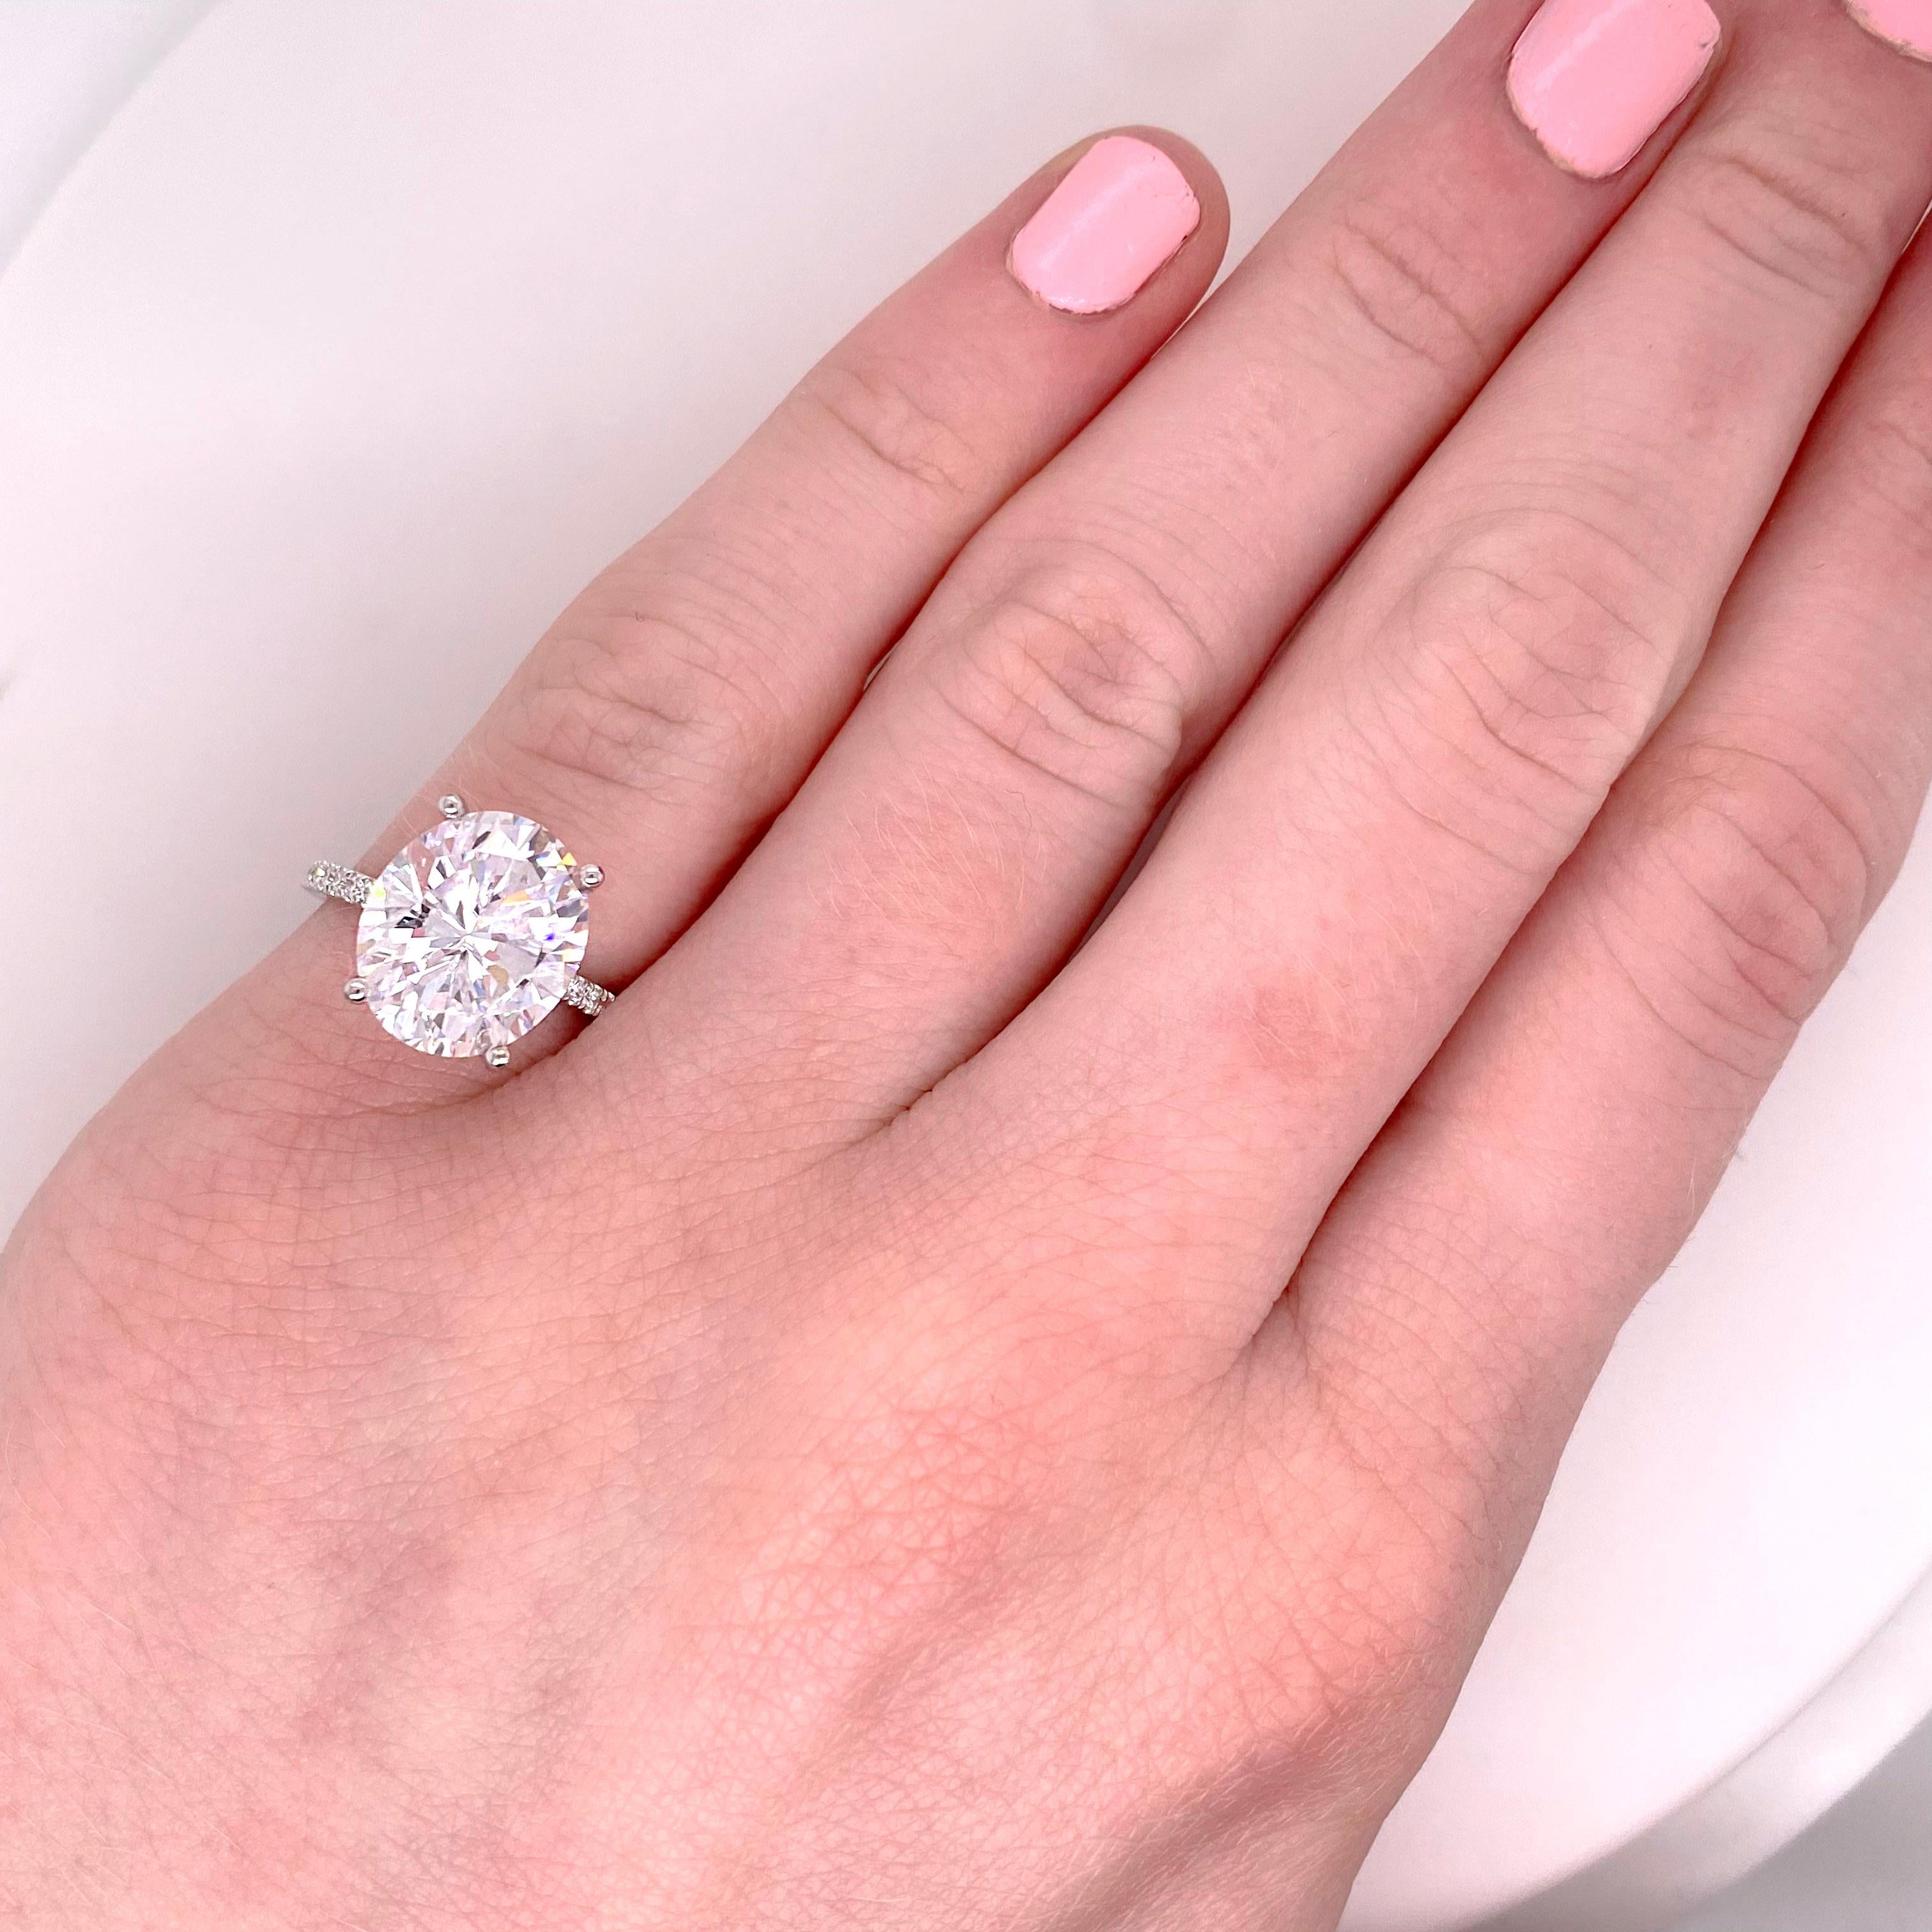 OUR #1 BESTER SELTENER ENGAGEMENT-RING! Individuell gestalten Sie einen Ring wie diesen mit 10 Diamanten auf beiden Seiten und einem oval geschliffenen Mittelstein in jeder Größe. Dieser Ring ist sowohl für Ihren Diamanten als auch für unseren